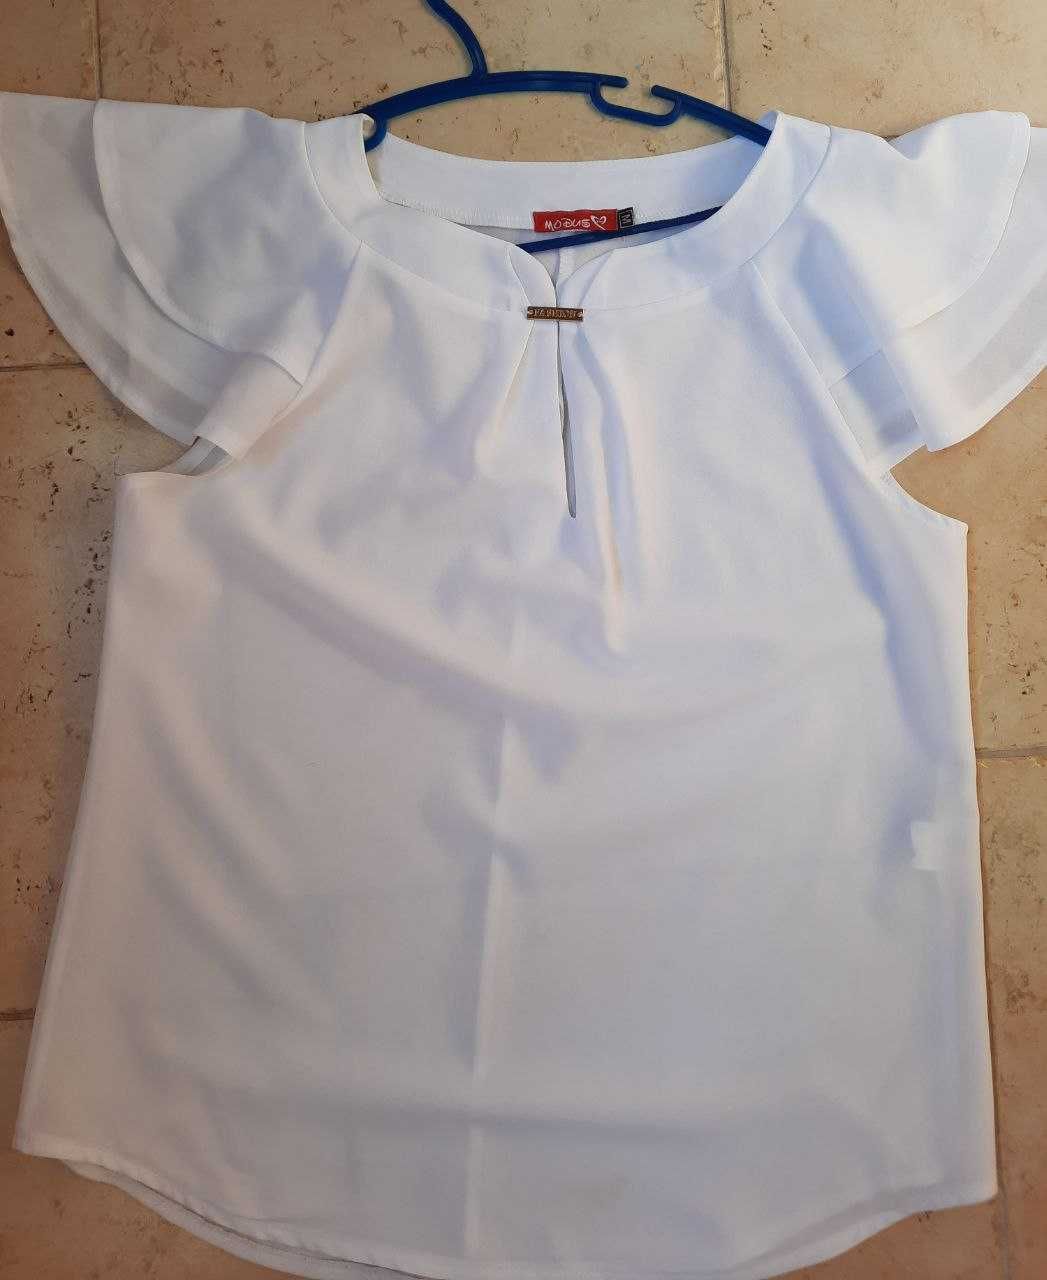 Продам белую блузку 44-46 размера